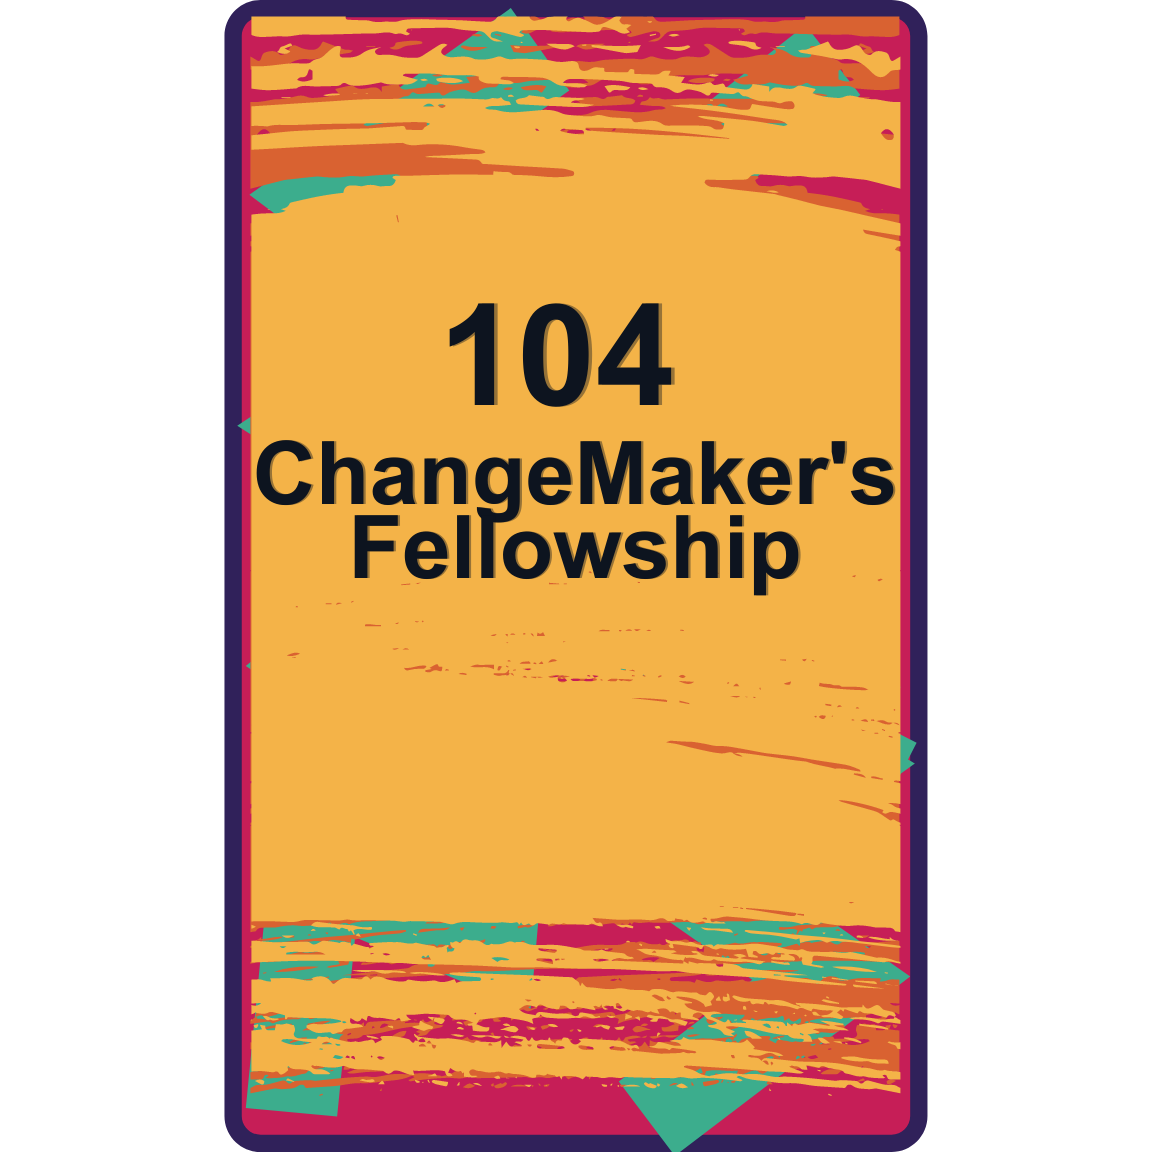 ChangeMaker's Fellowship